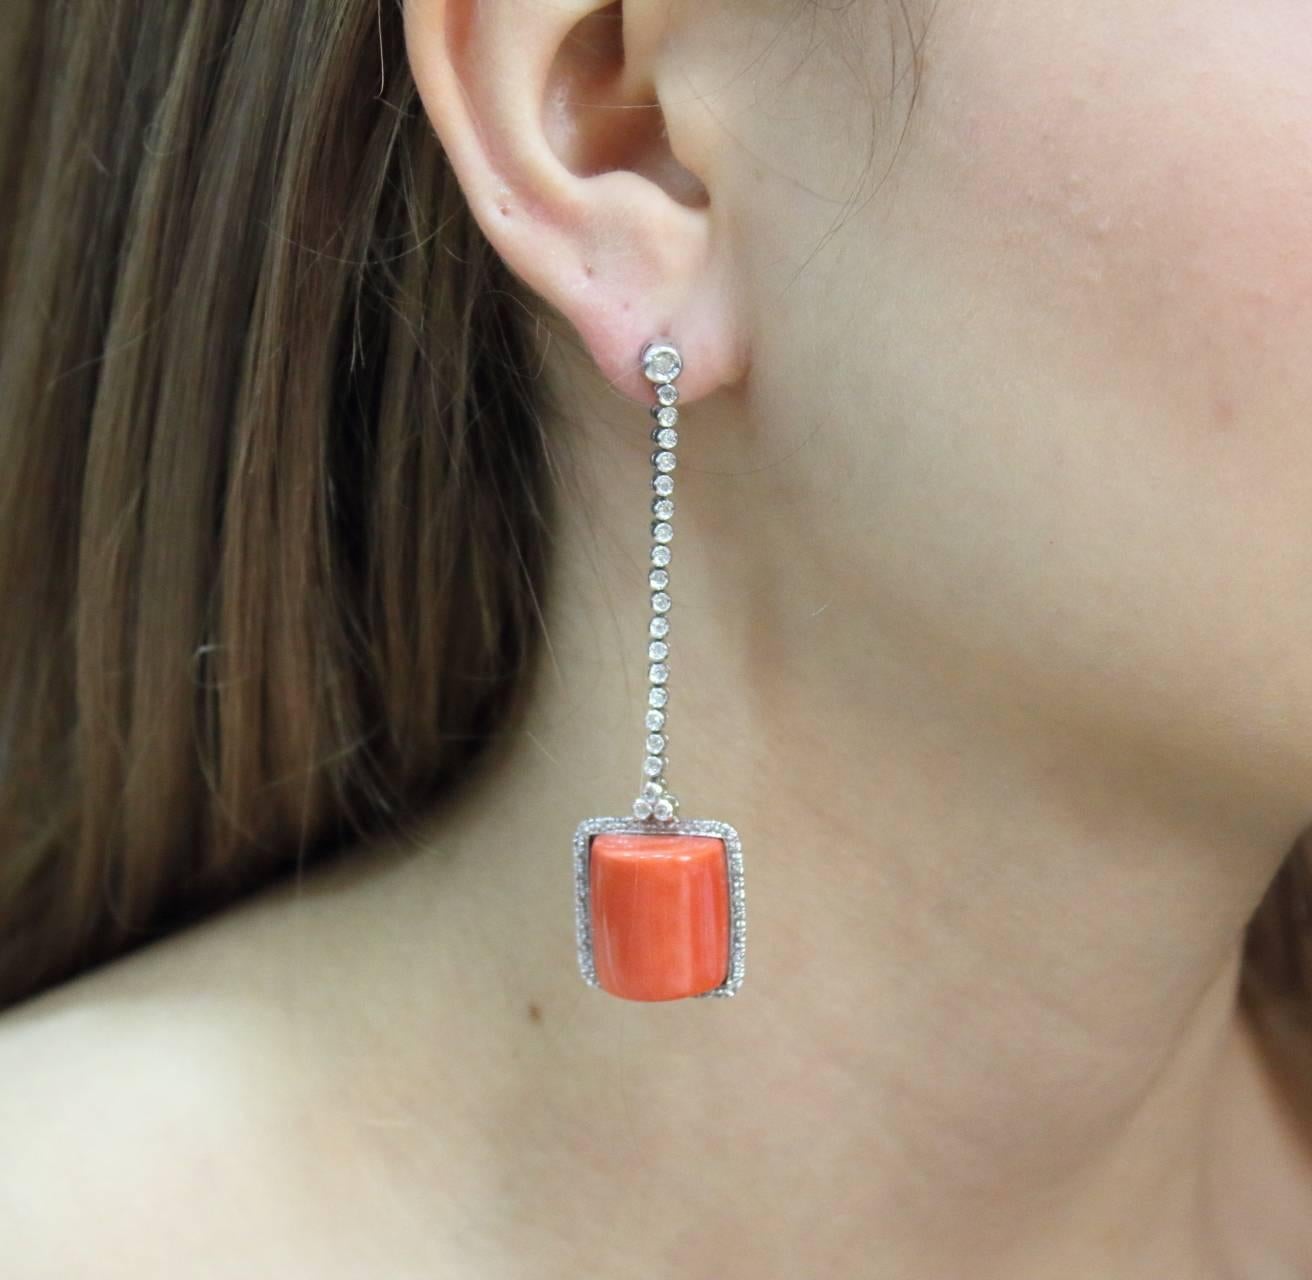 euro wire earrings